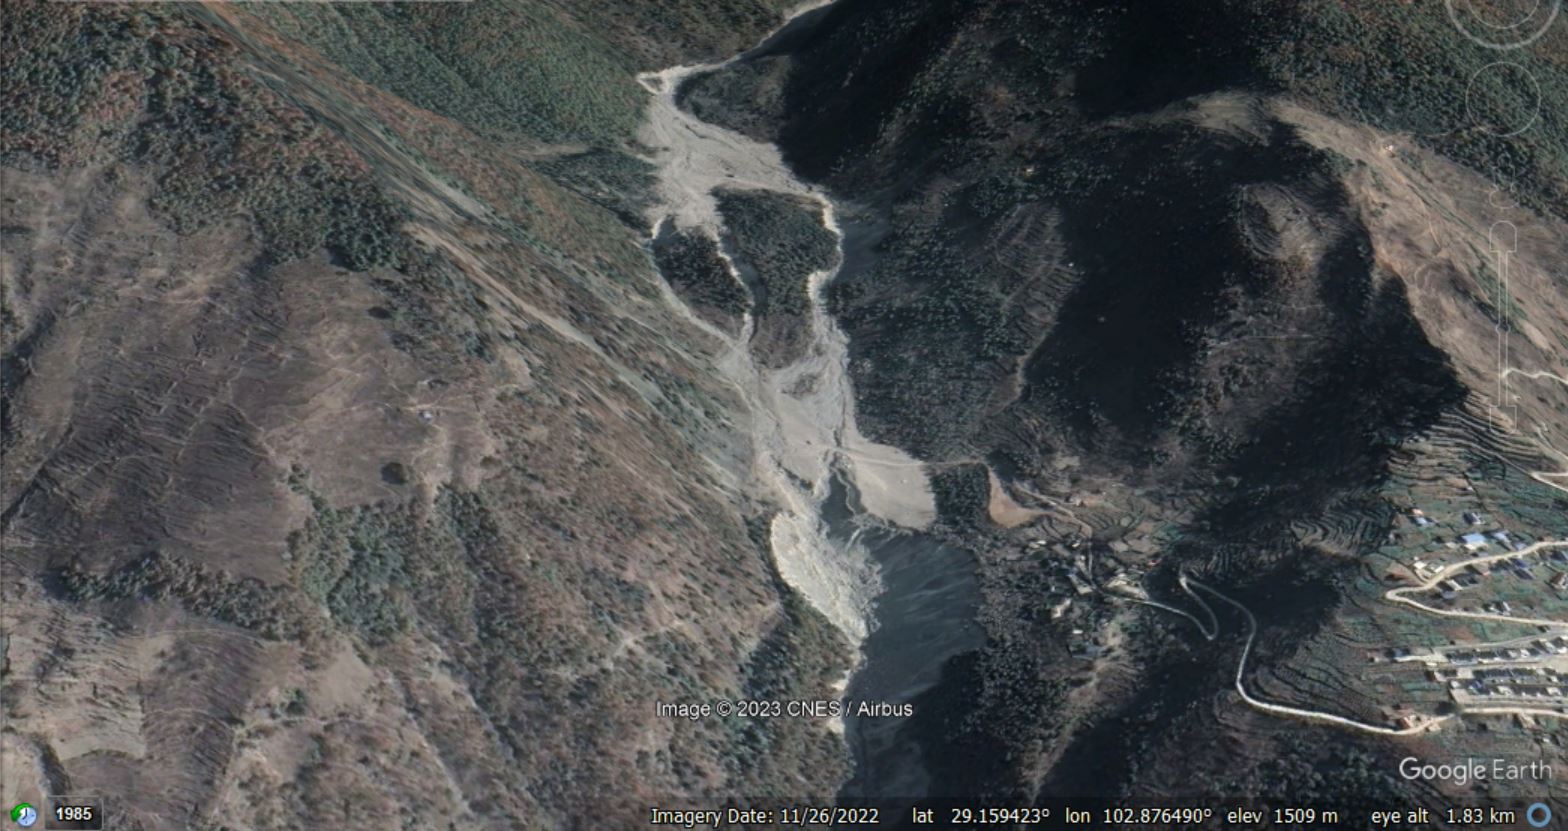 2022년 11월에 수집된 채널의 두 고원을 보여주는 Azijue 잔해 흐름의 여파에 대한 Google 어스 이미지.